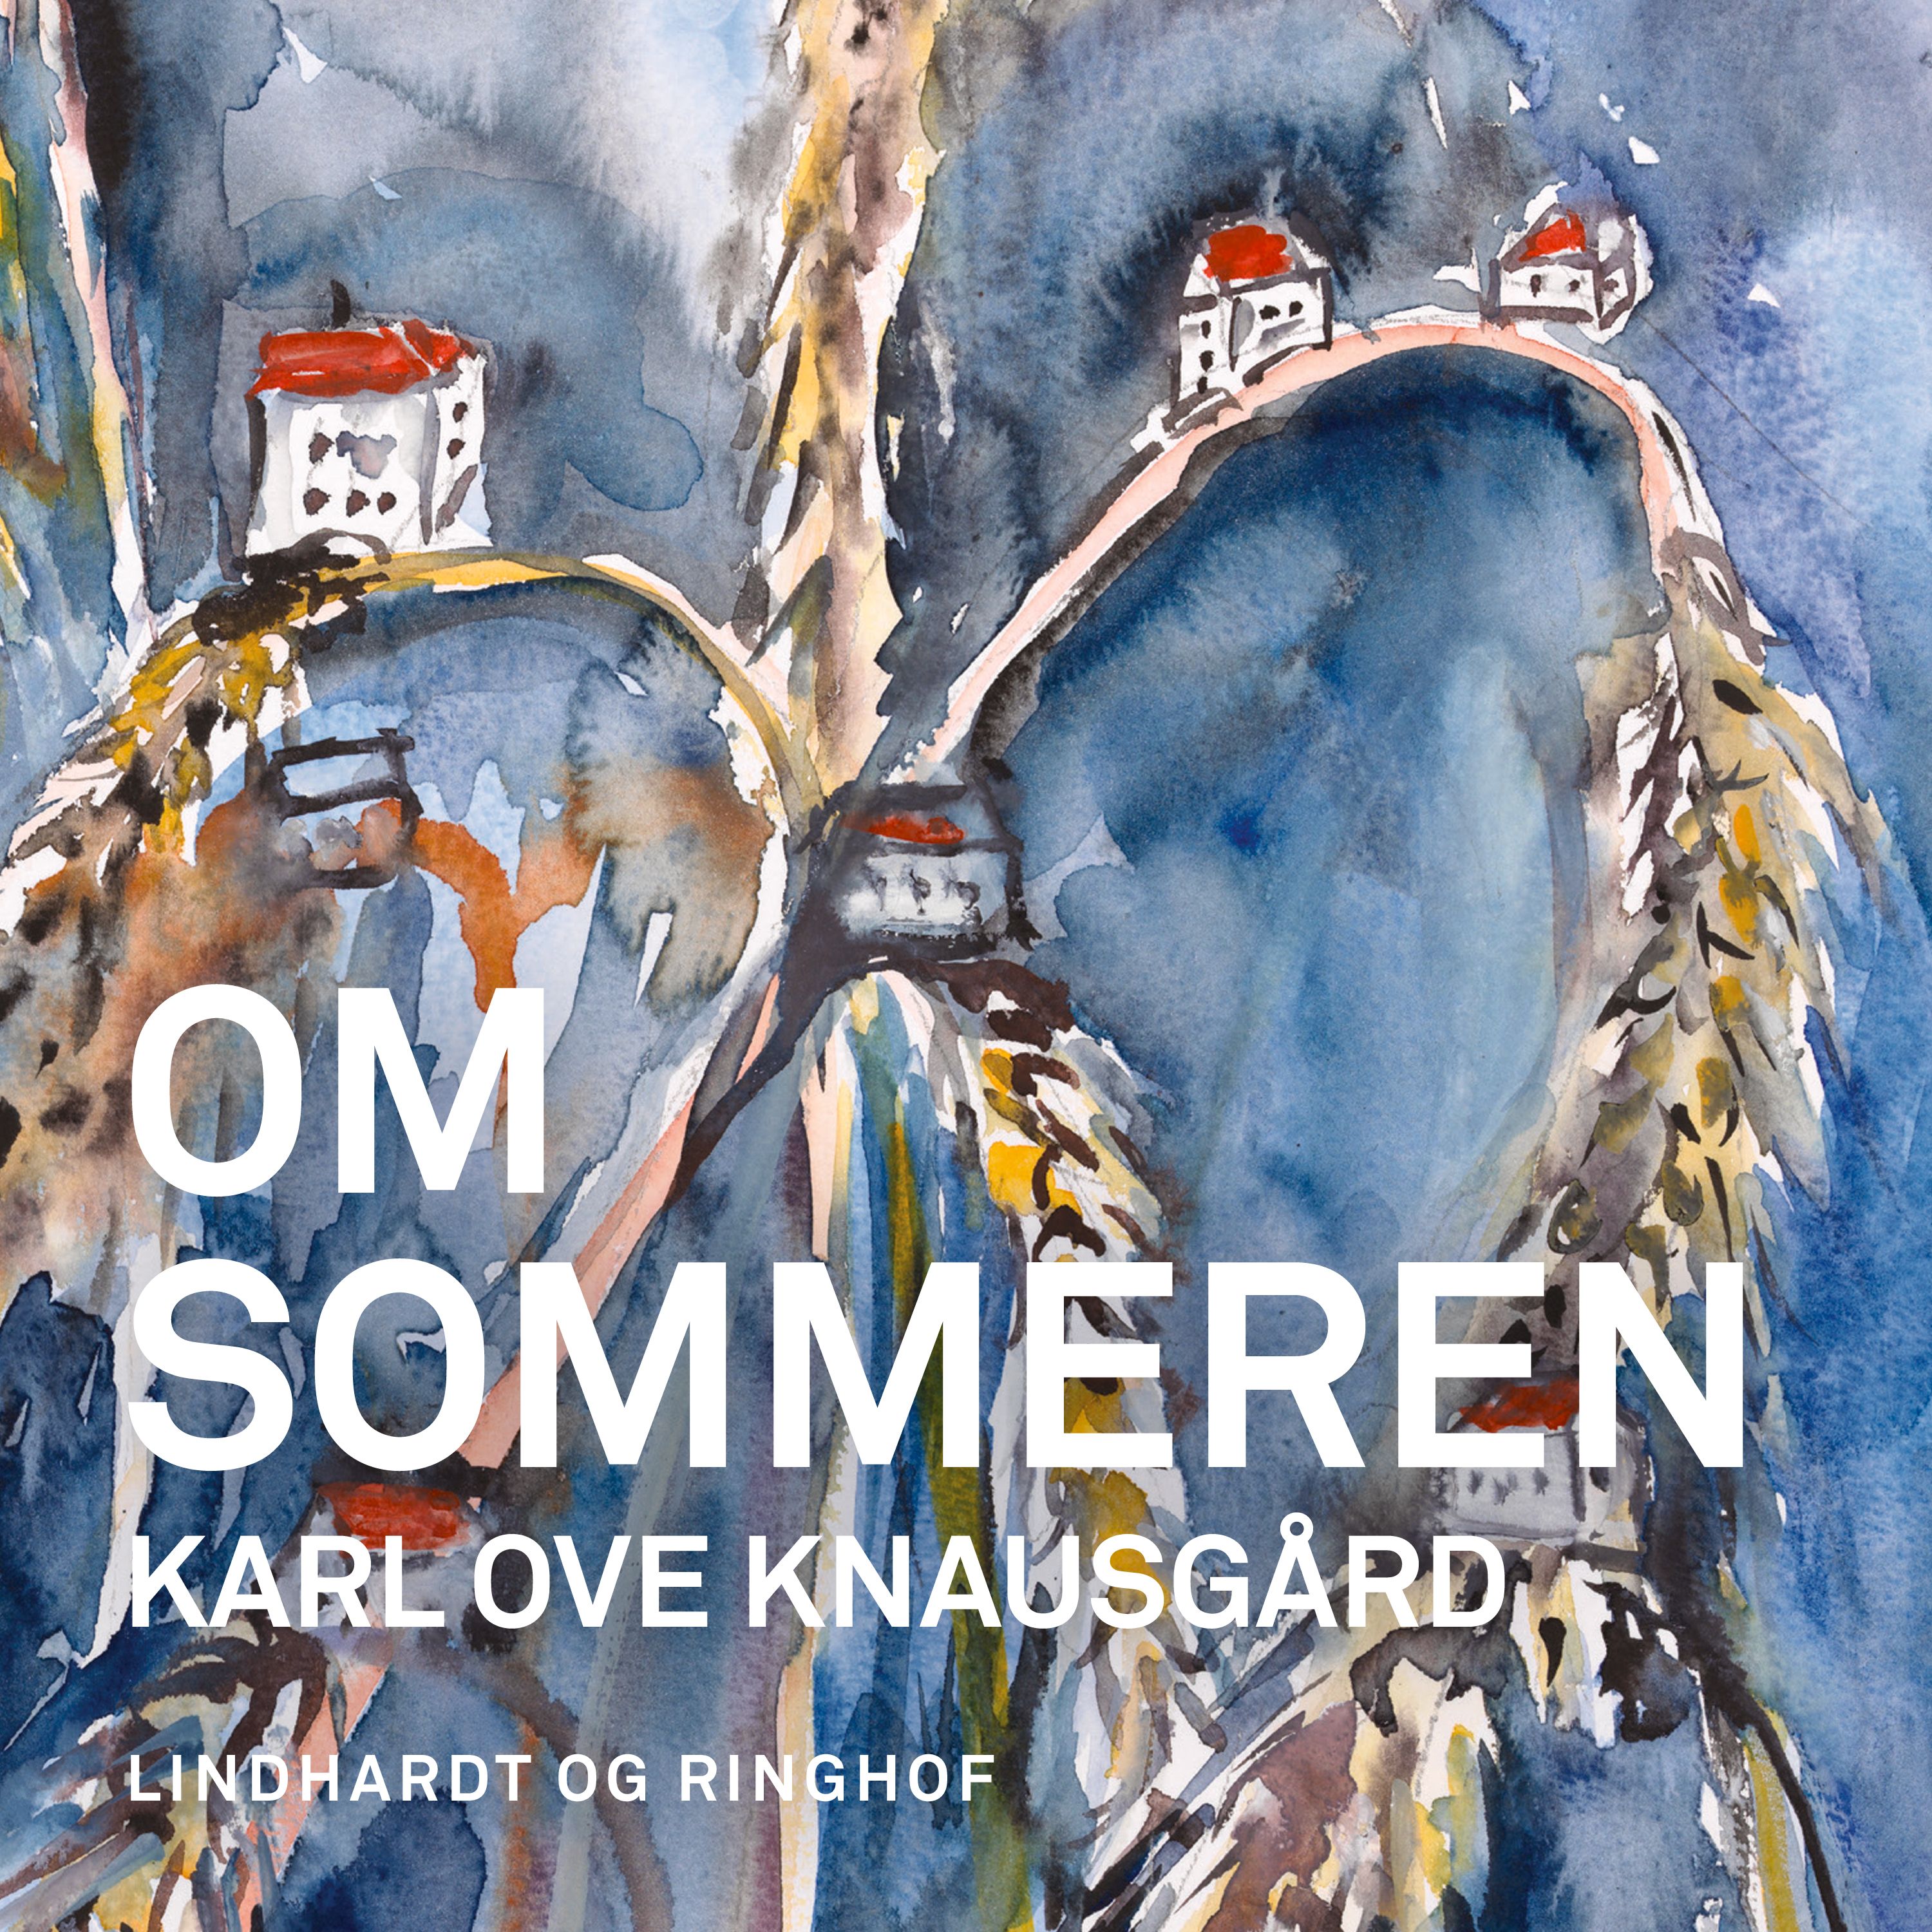 Om sommeren, ljudbok av Karl Ove Knausgård